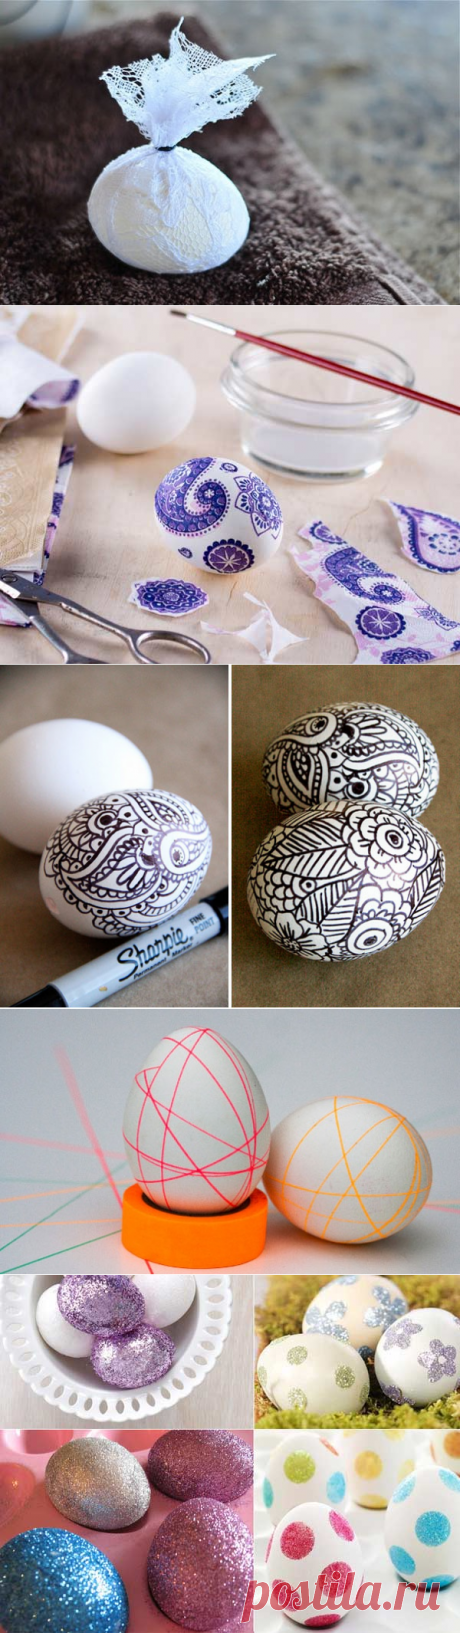 14 способов легко и оригинально оформить пасхальные яйца